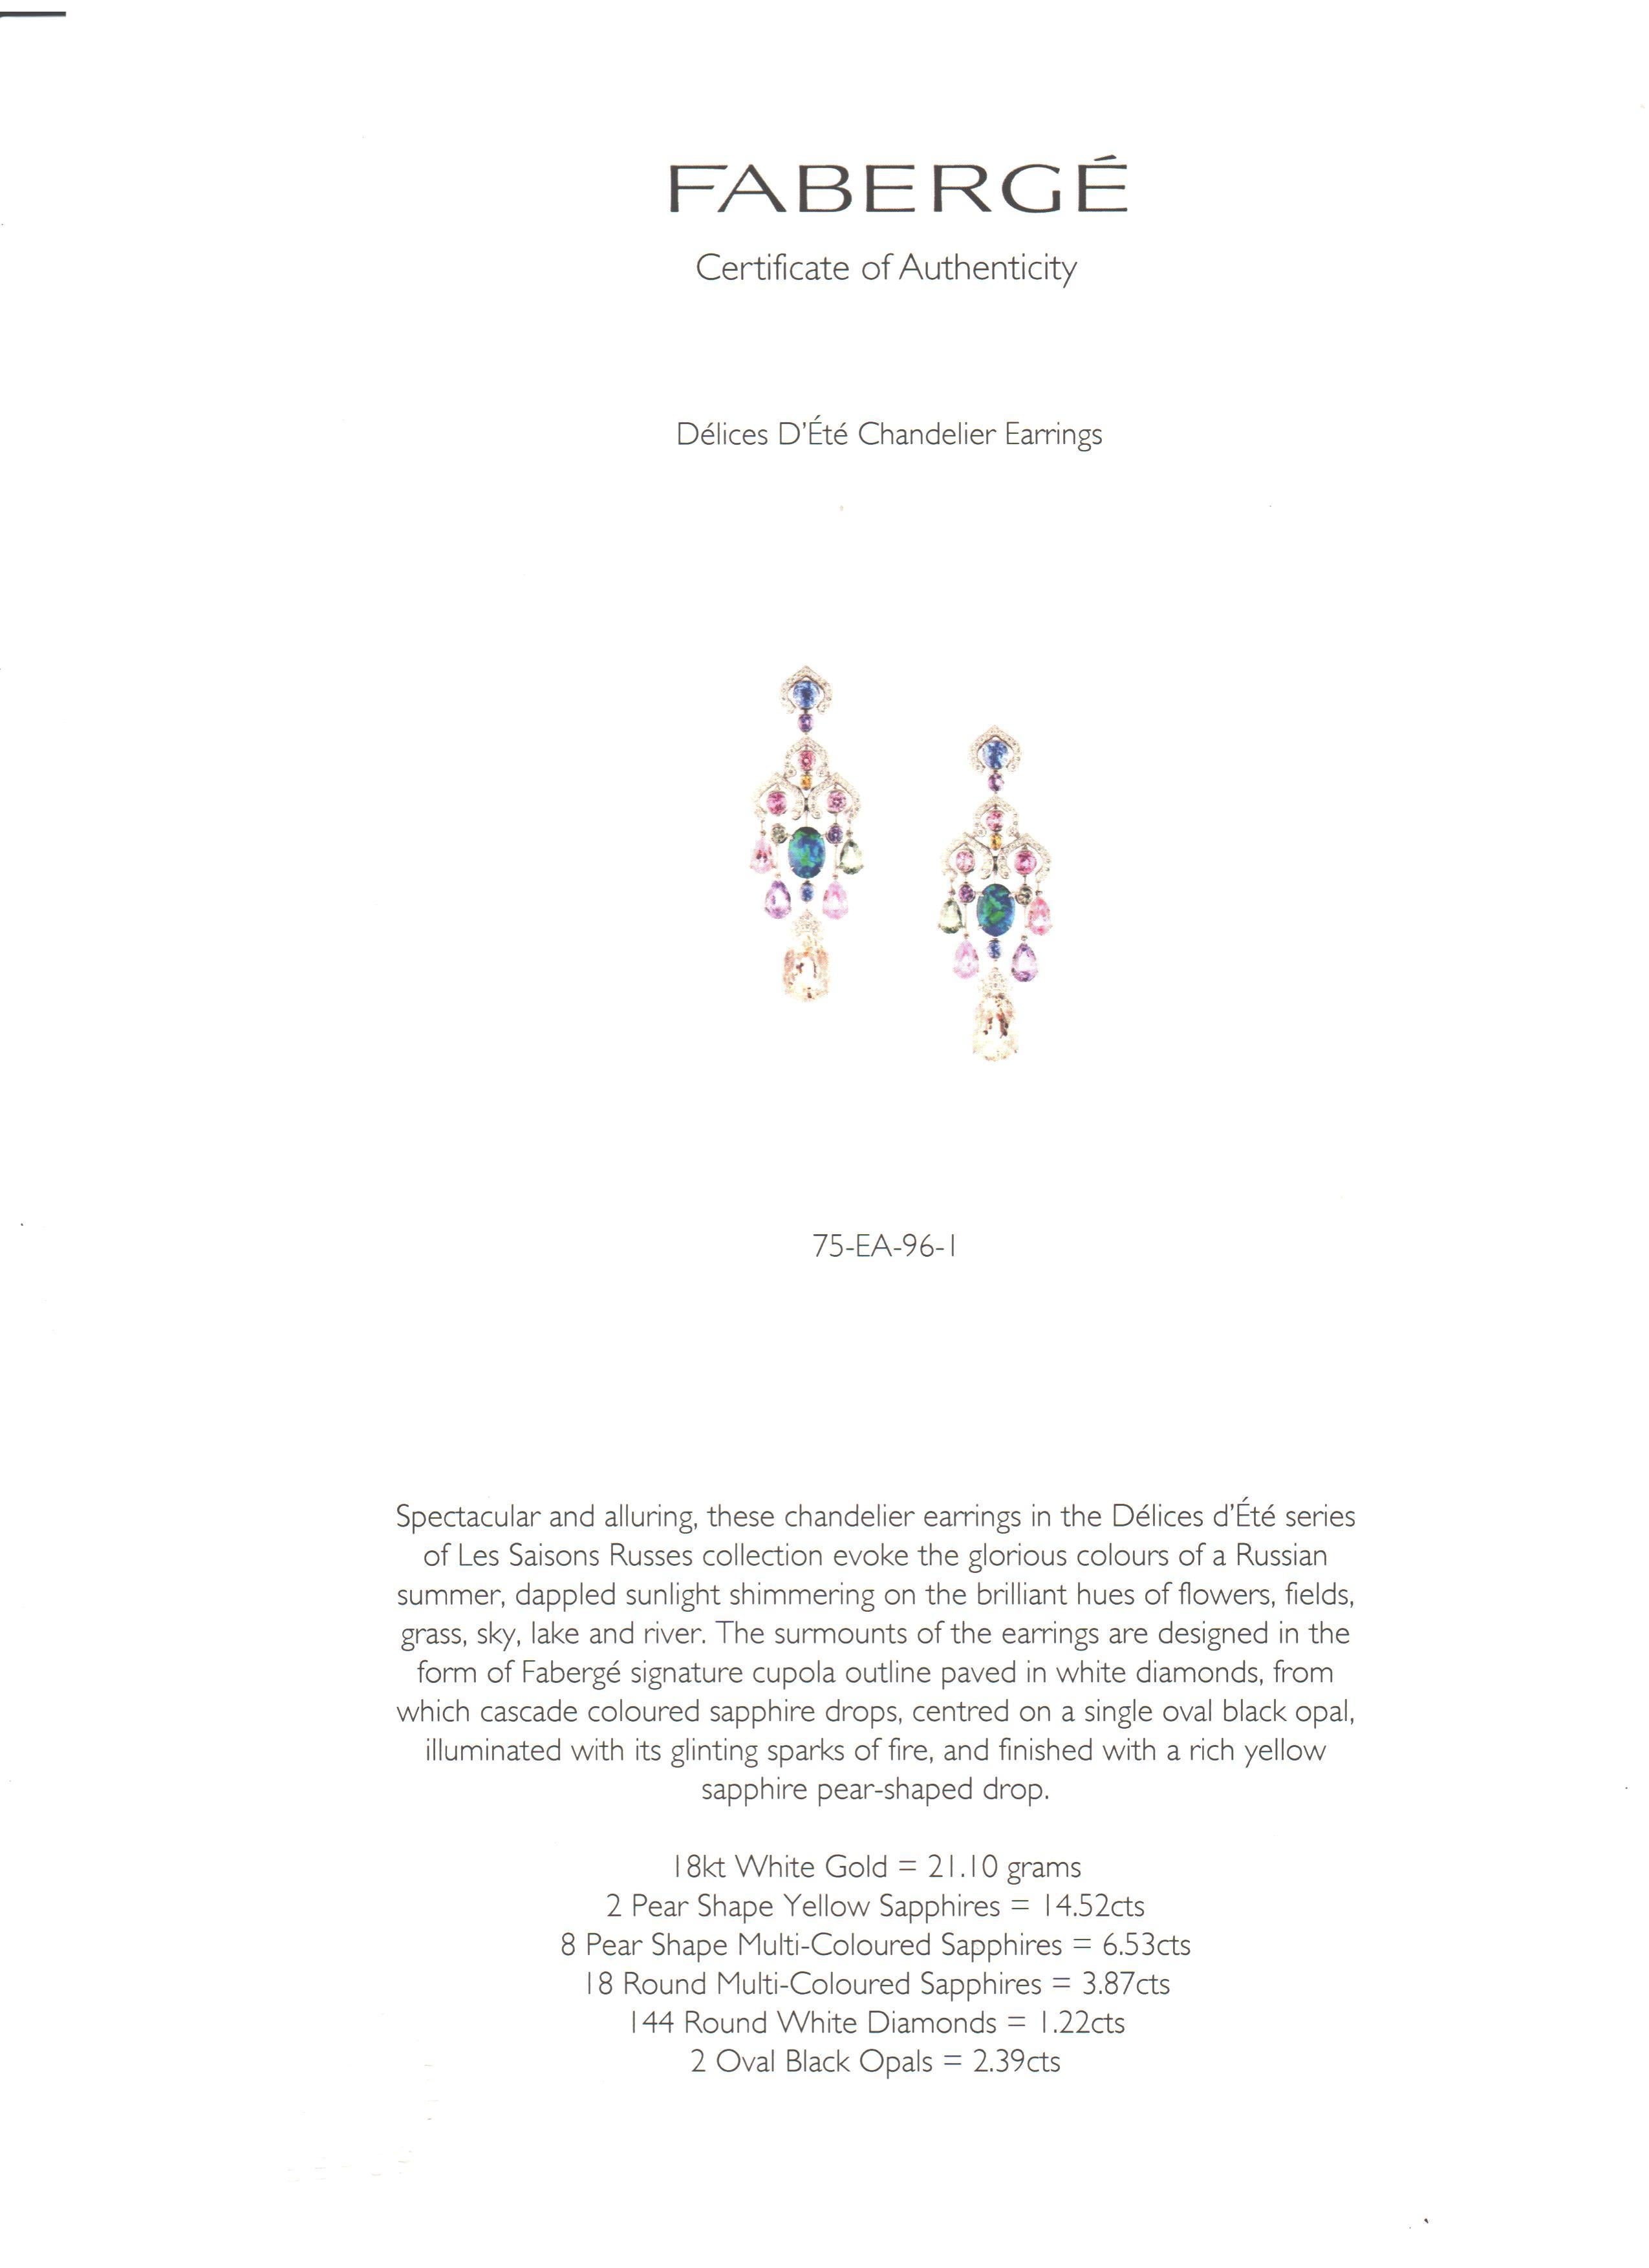 Belle Époque Fabergé Délices D’Été Collection Diamond Sapphire Black Opal Earrings For Sale